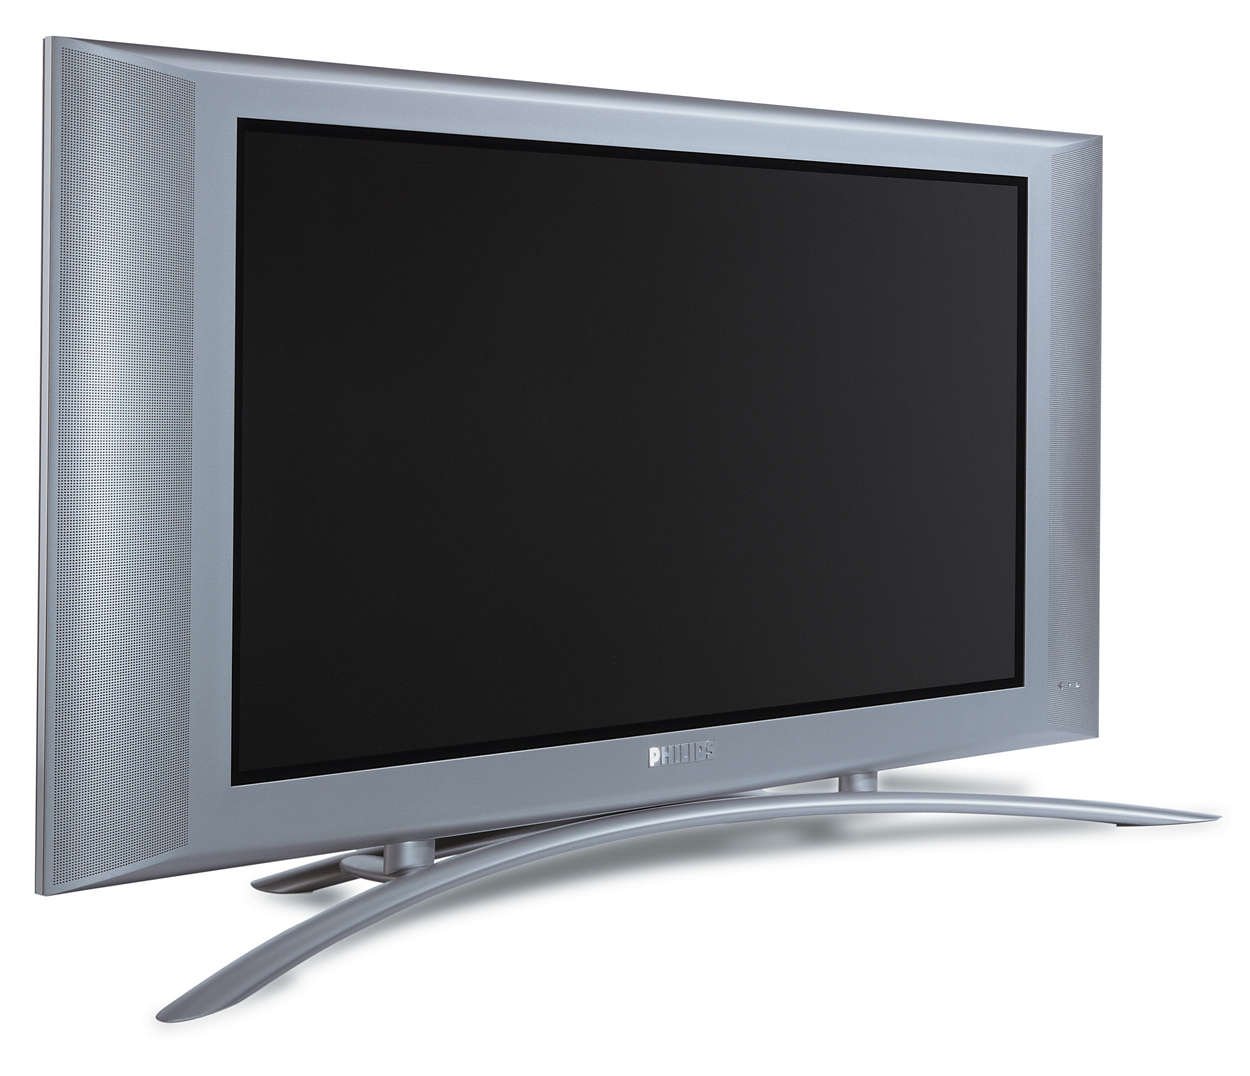 Авито купить телевизор плоский. Телевизор Philips 37fd9944/01s. Philips 32fd9944/01s. Телевизор Филипс 42fd9944/01s. Плазменная панель Philips 37fd9944/01s.